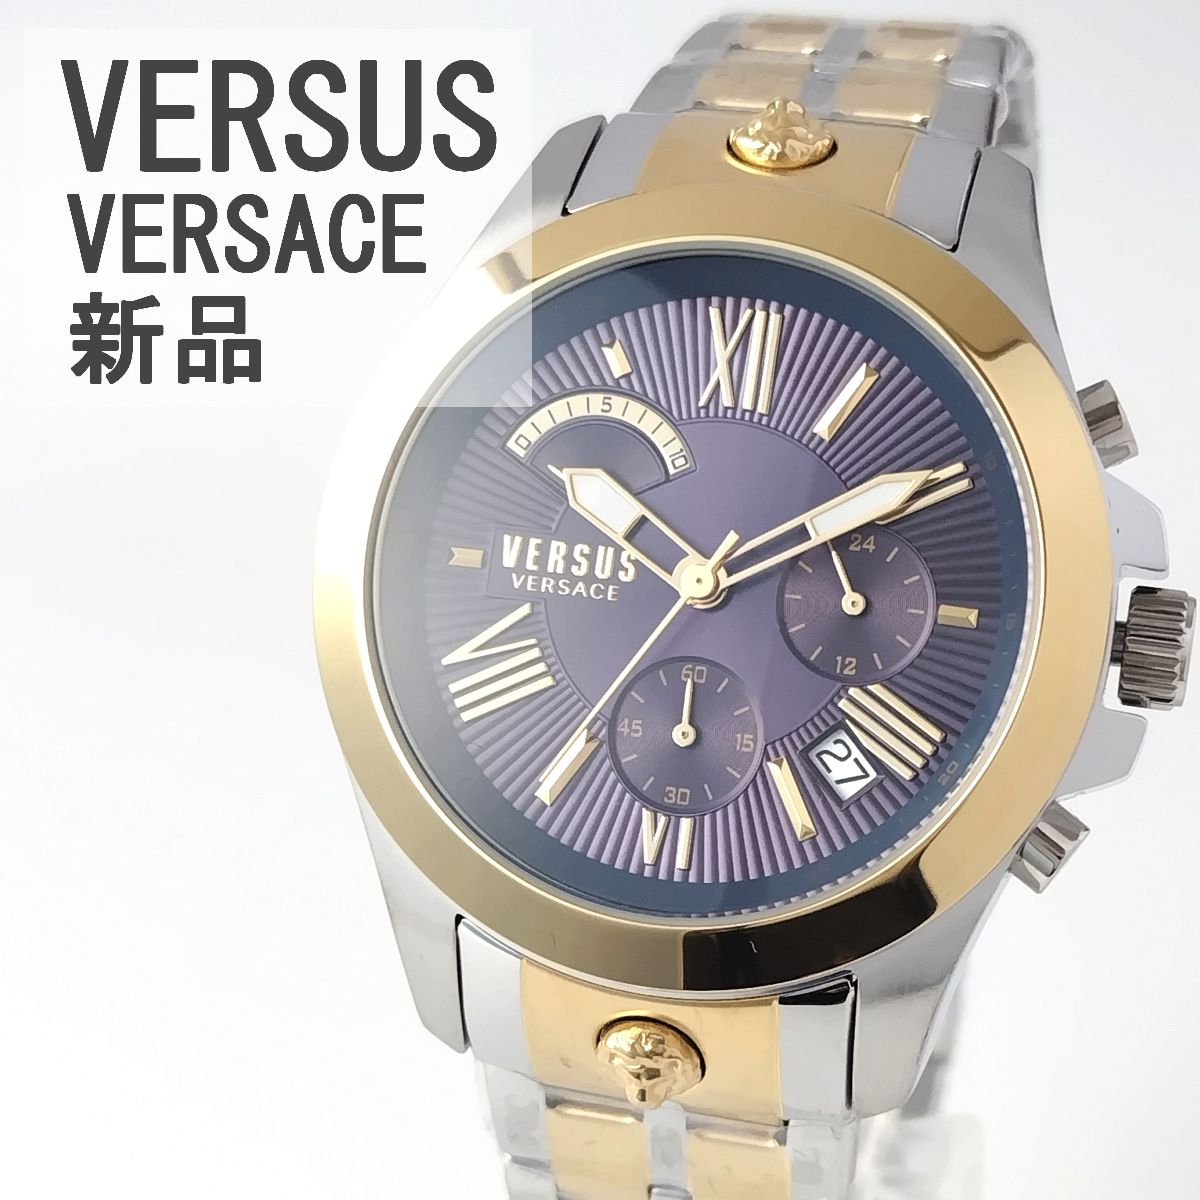 ネイビー/ゴールド新品メンズ腕時計VERSUS VERSACEシルバー日付クロノちーちゃん出品いろいろ